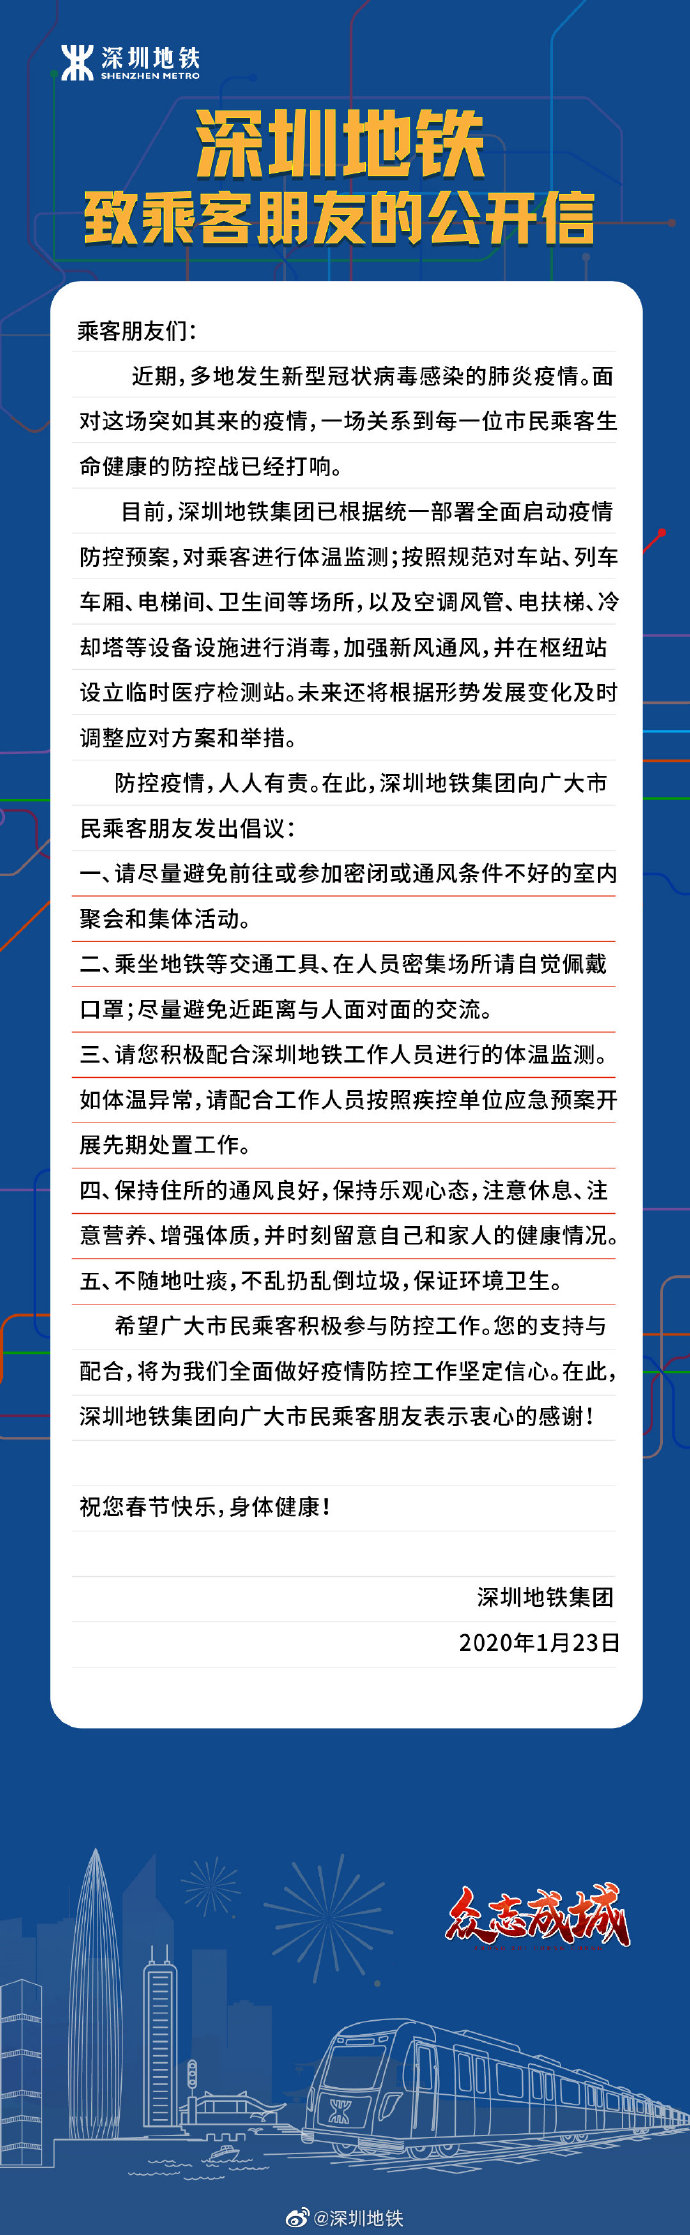 深圳地铁致乘客朋友的公开信